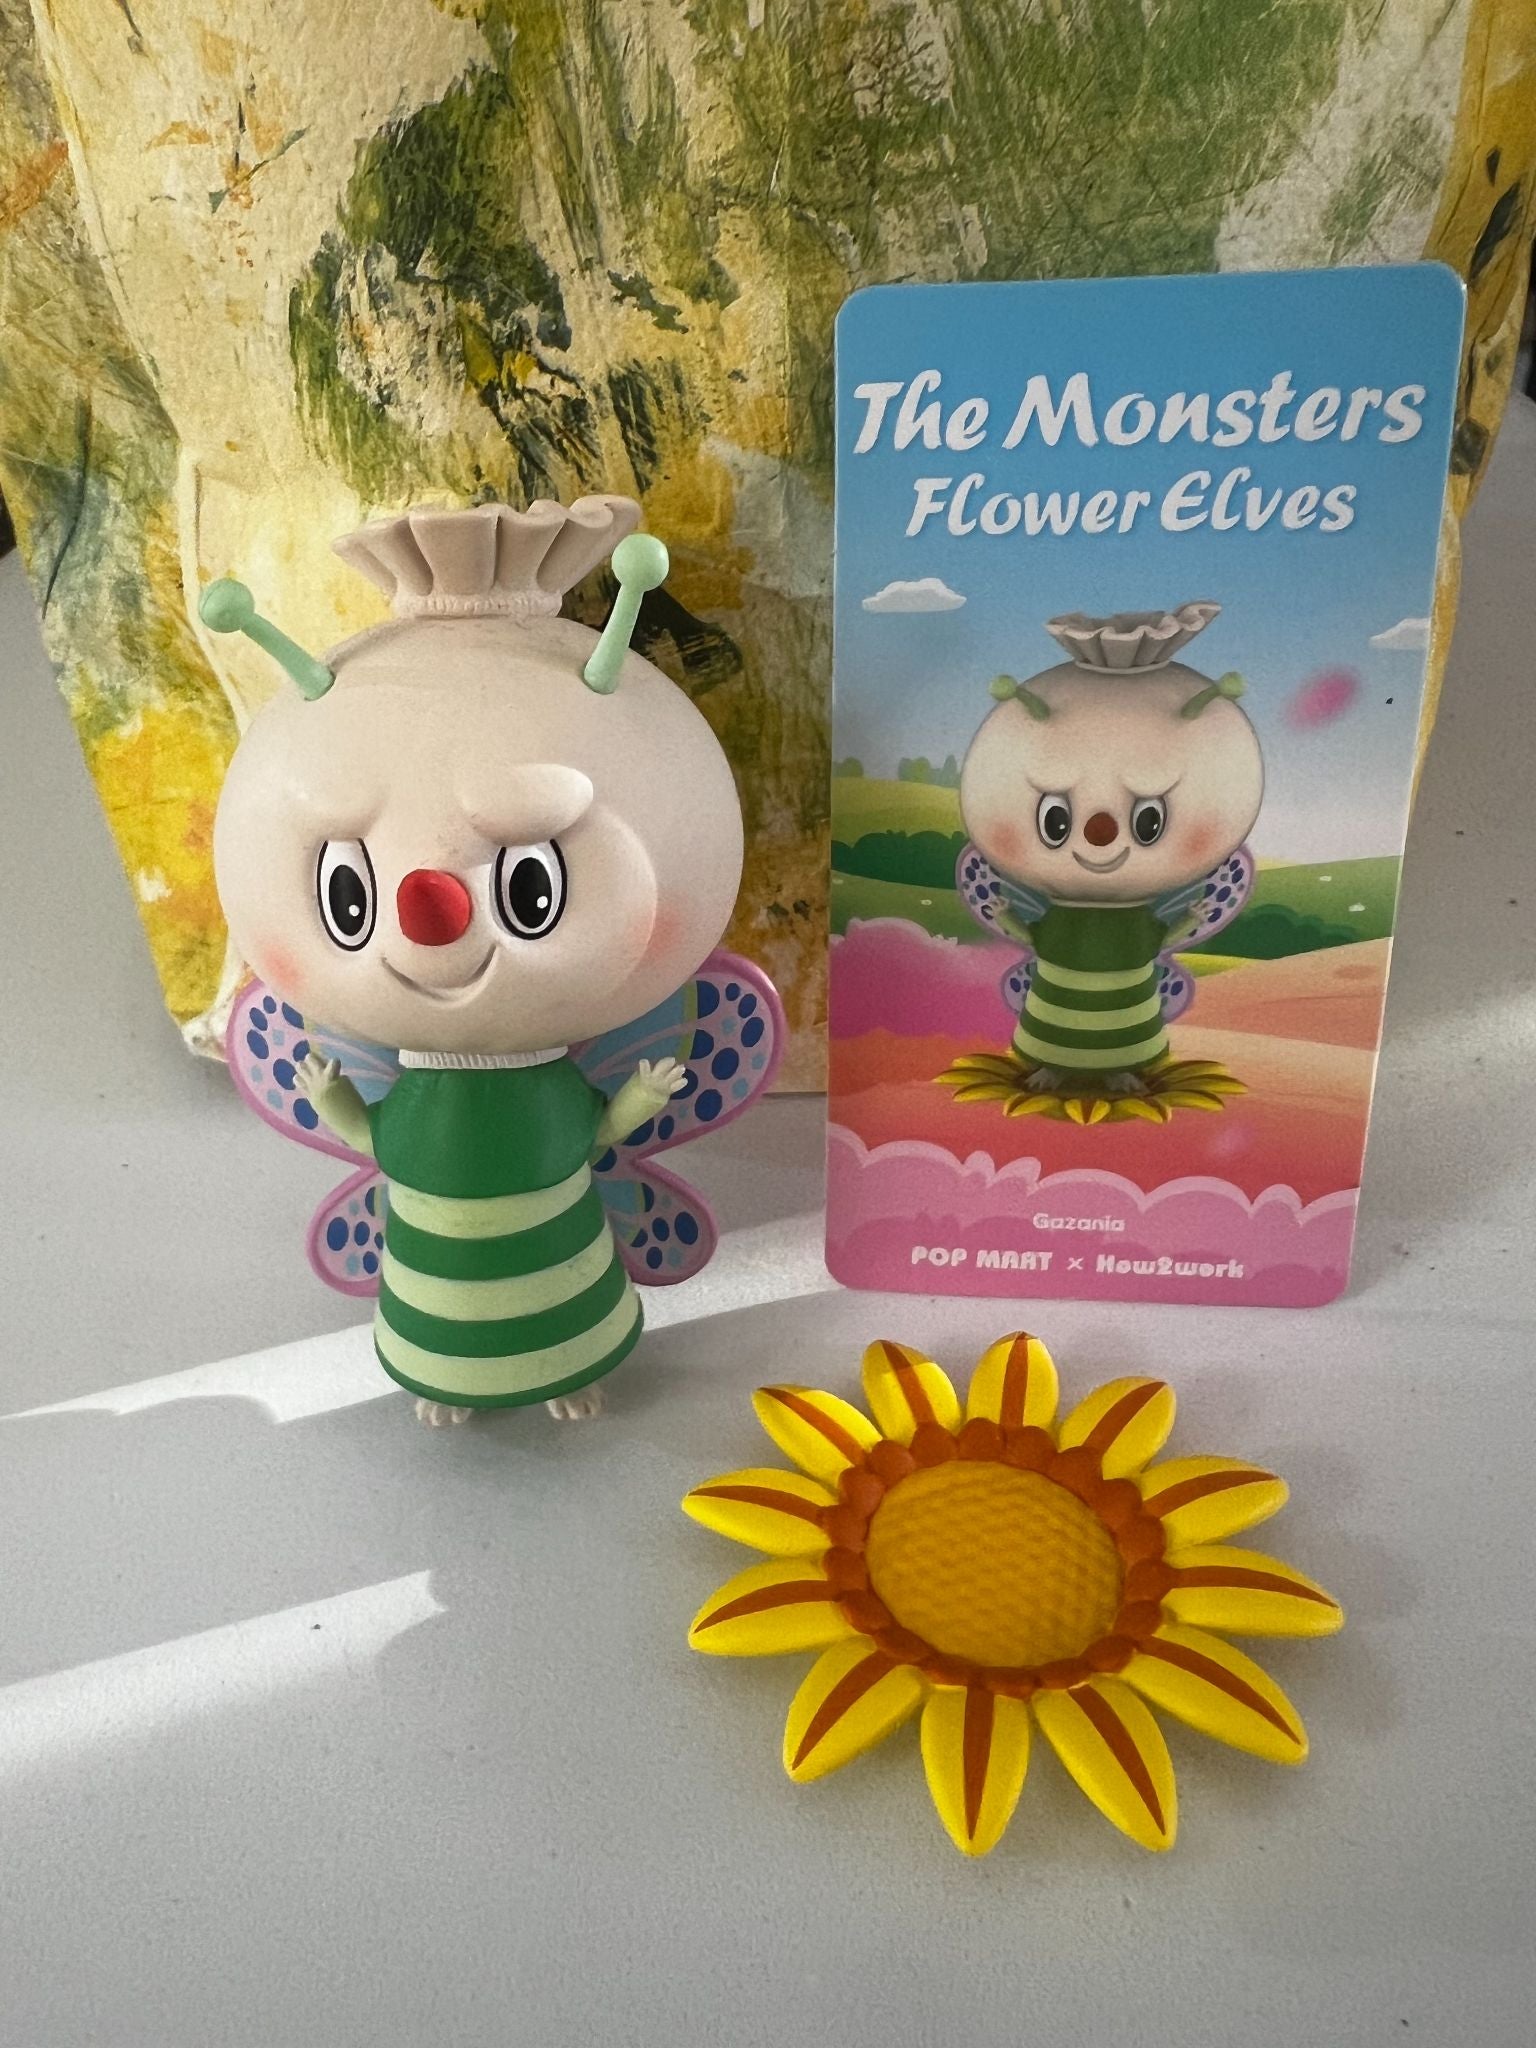 Gazania The Monsters - Flower Elves - Pop Mart x Kasing Lung x How2work - 1